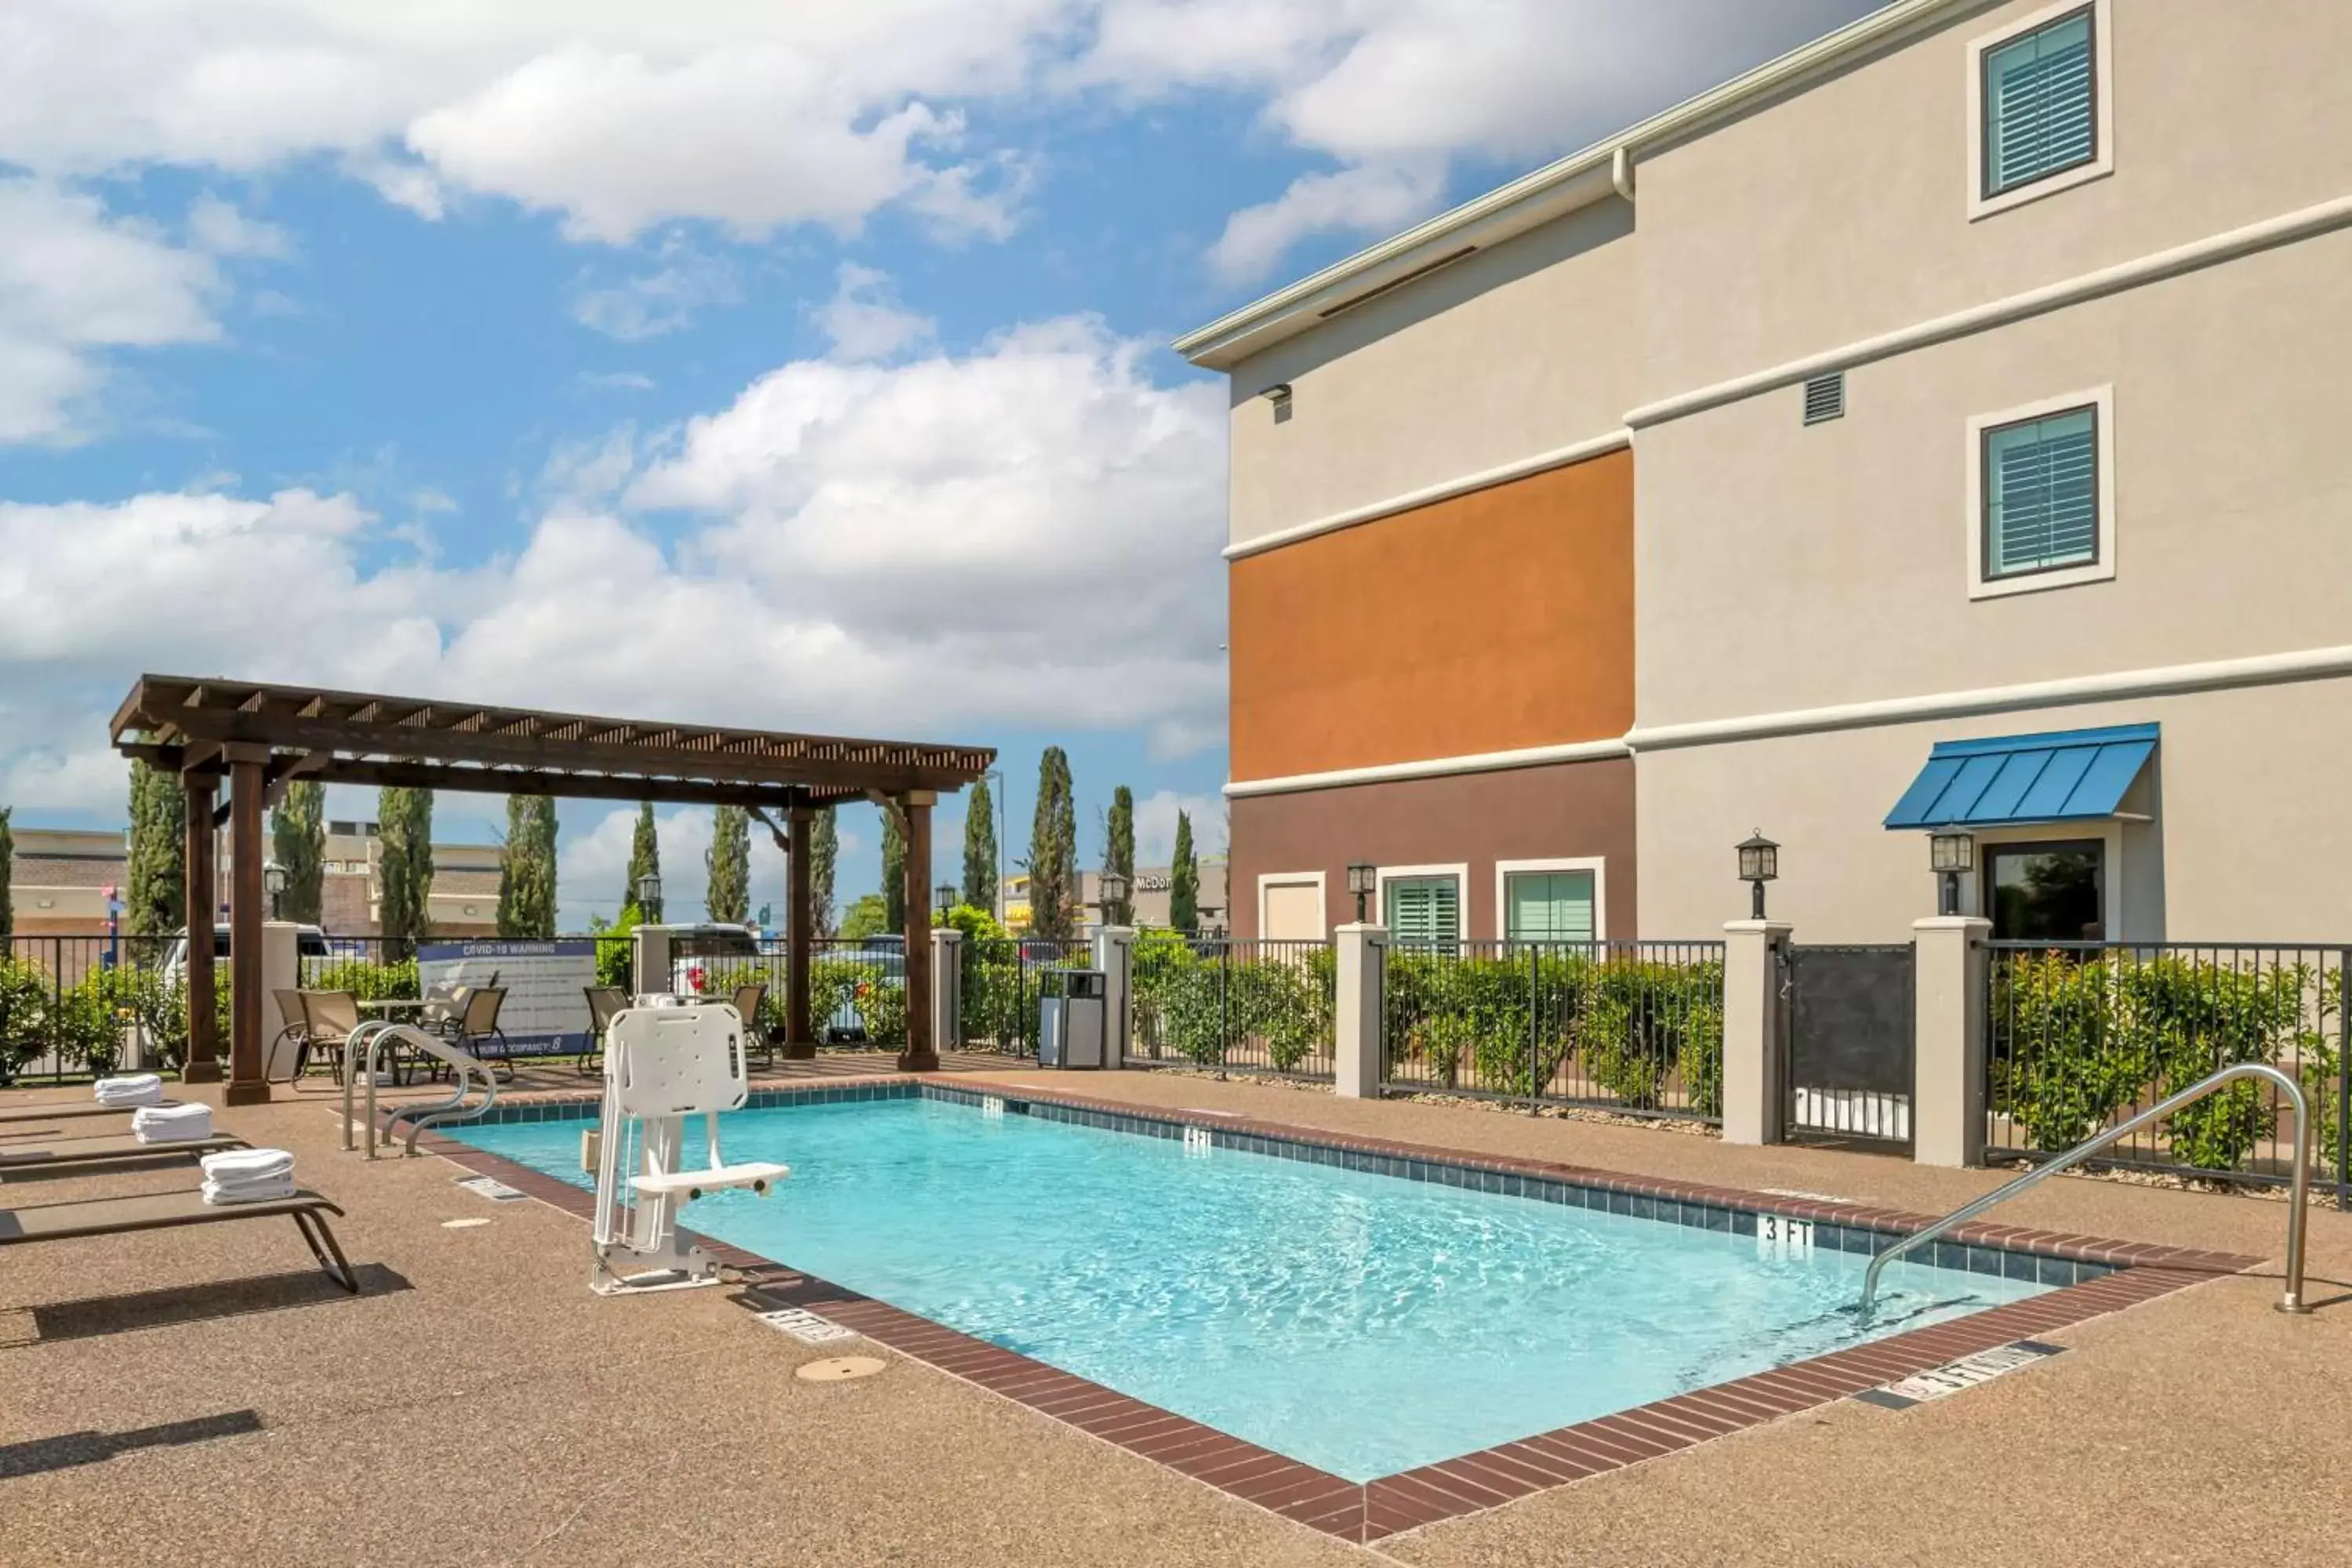 Pool view, Property Building in Best Western Plus Denton Inn & Suites